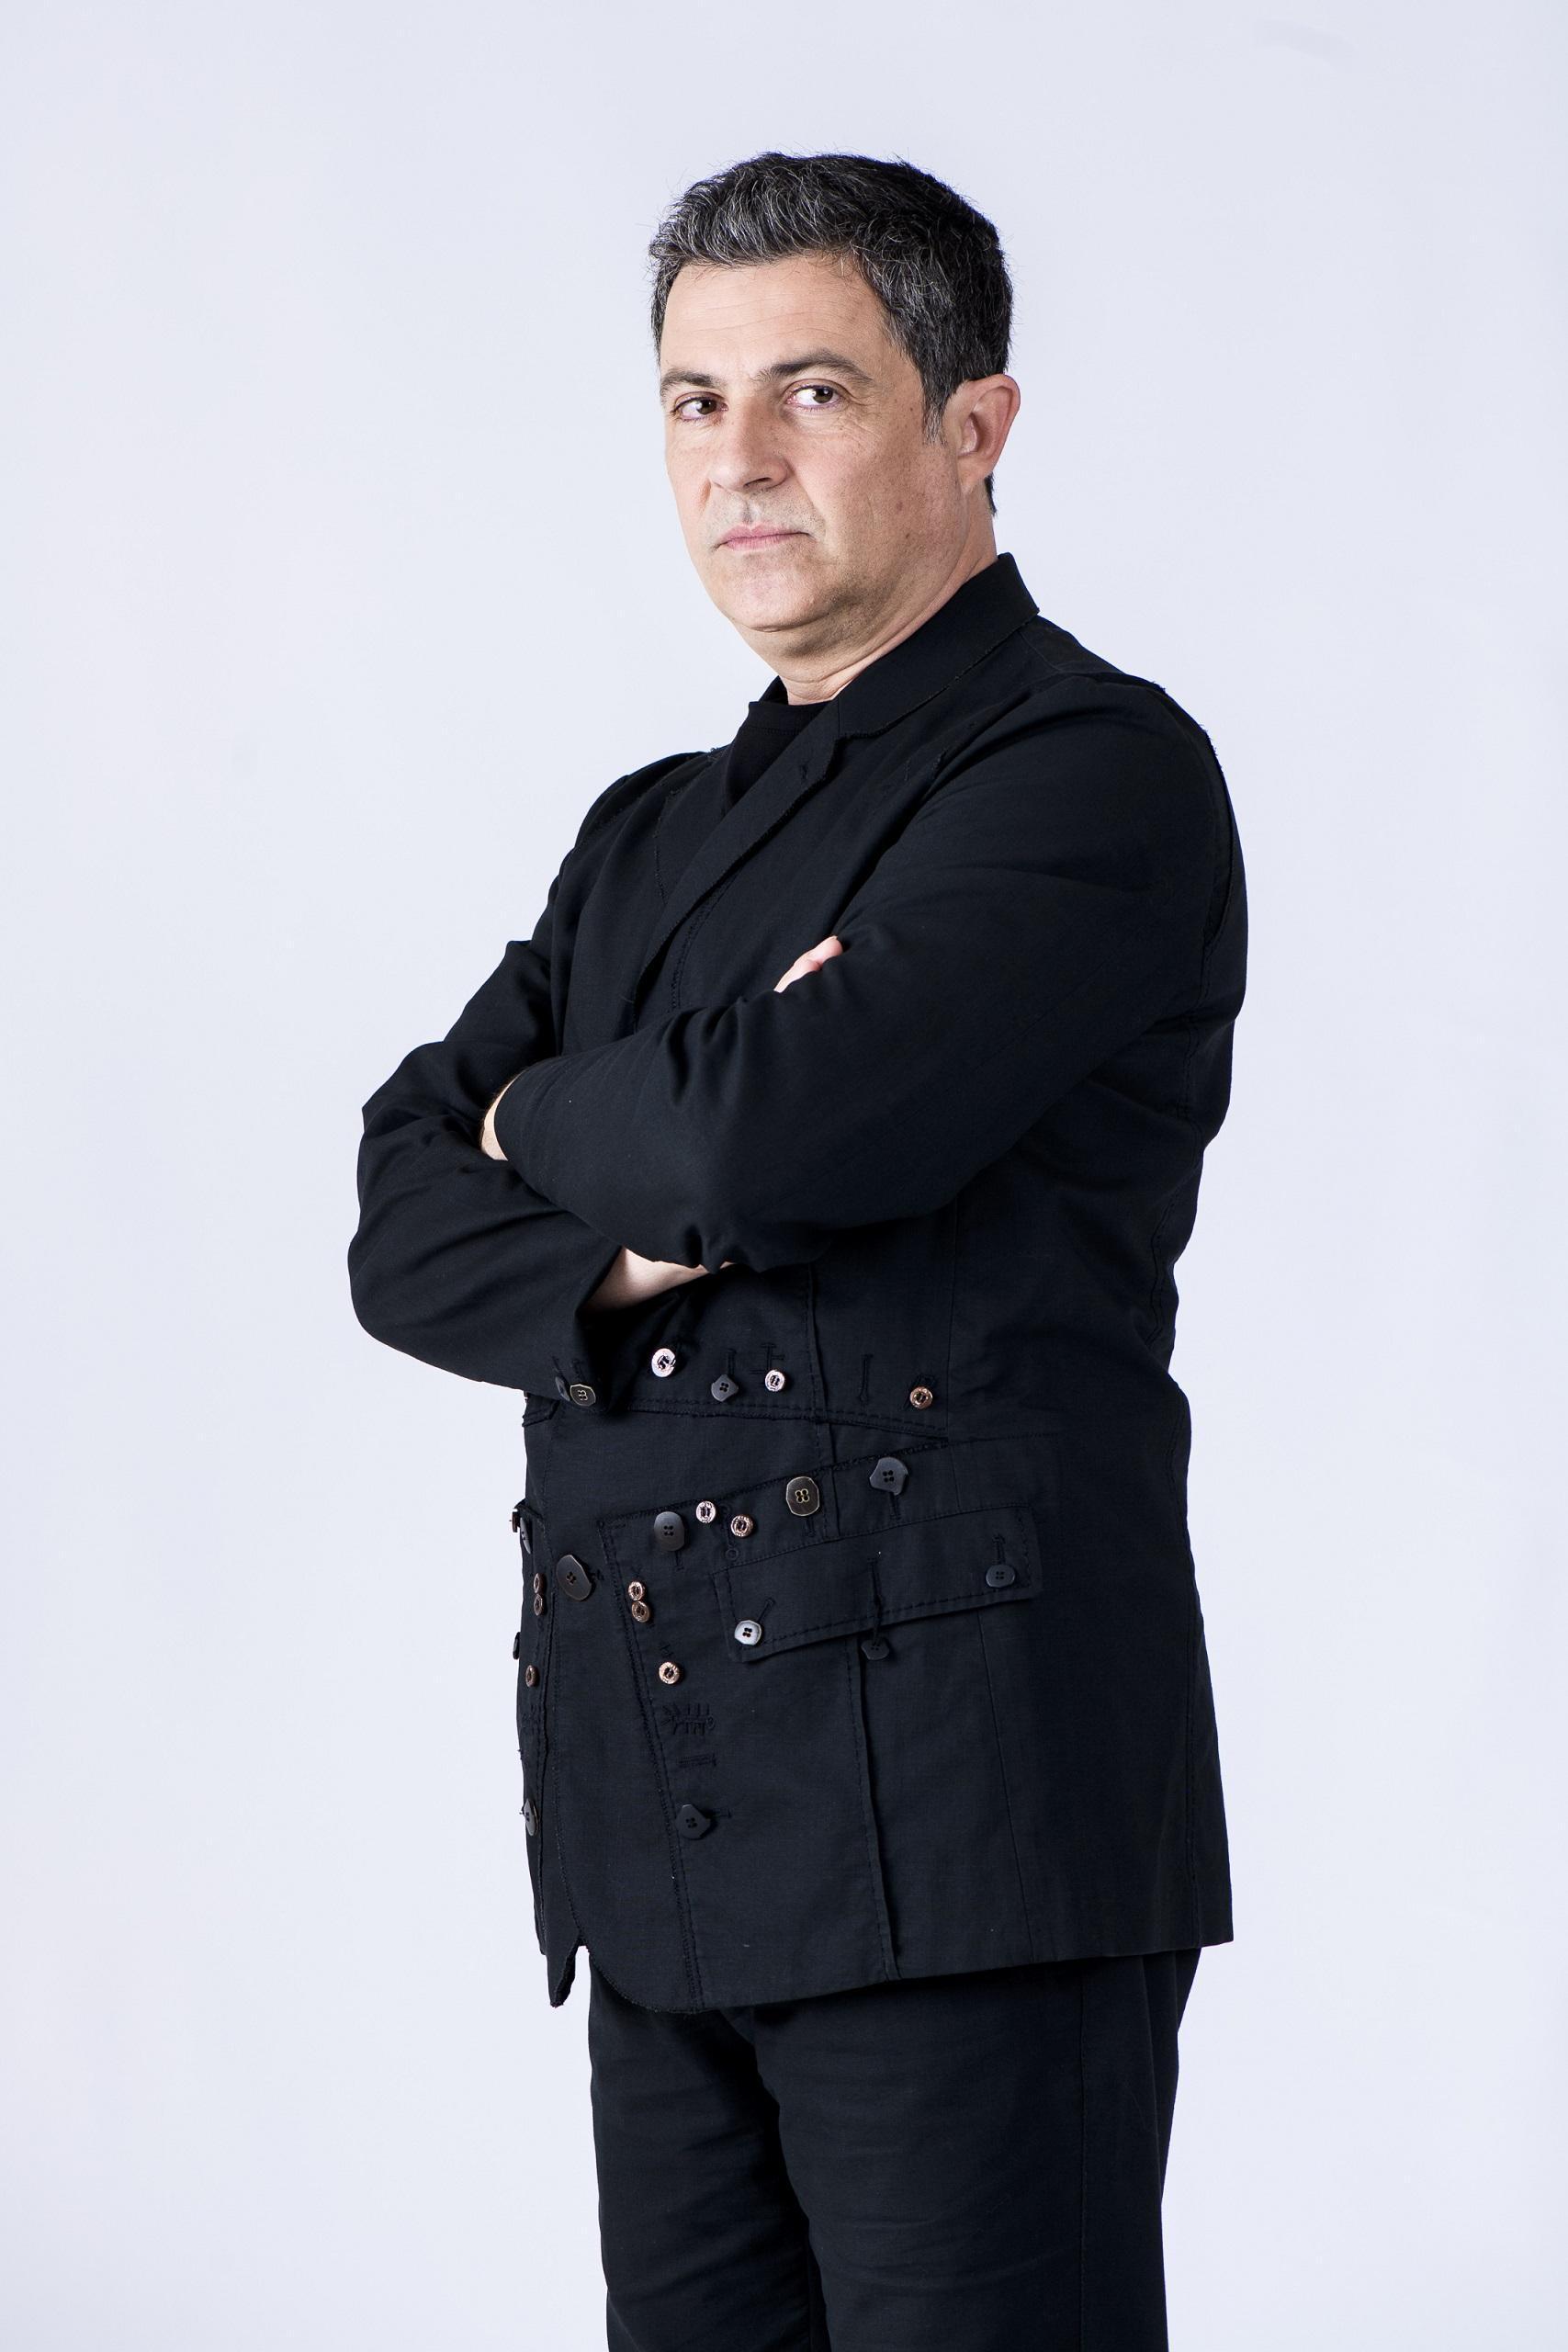 Mihai Călin în costum negru